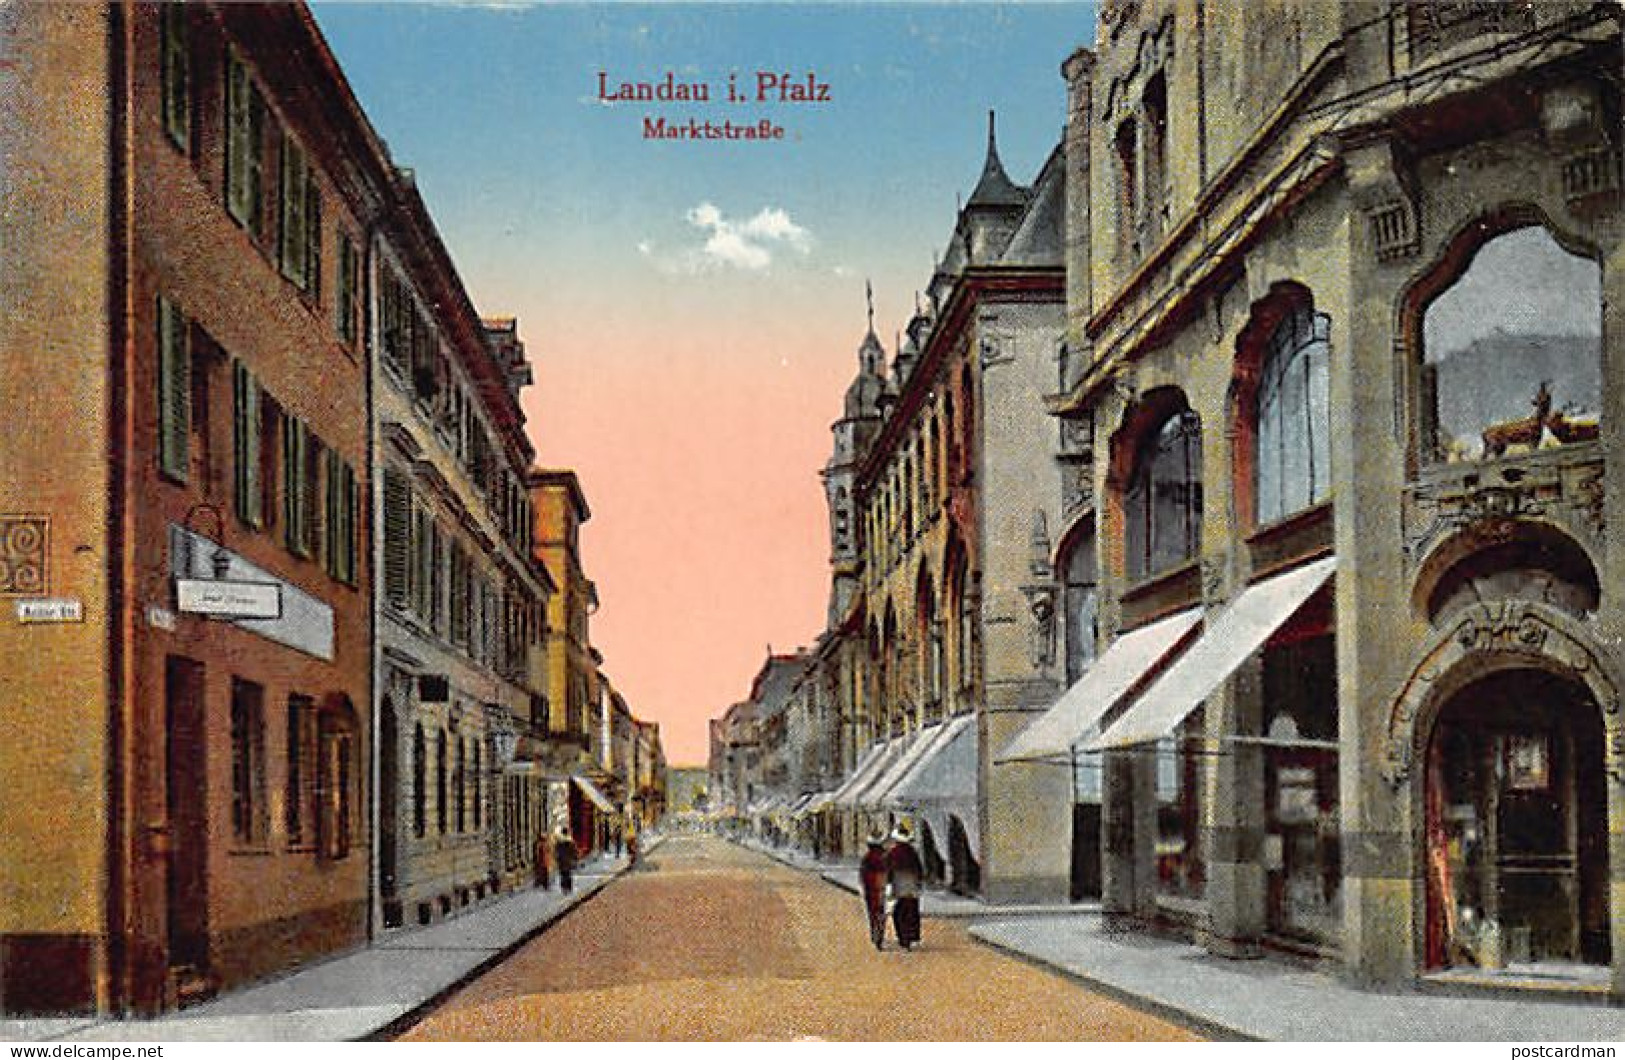 Deutschland - LANDAU - Markstrasse - Landau